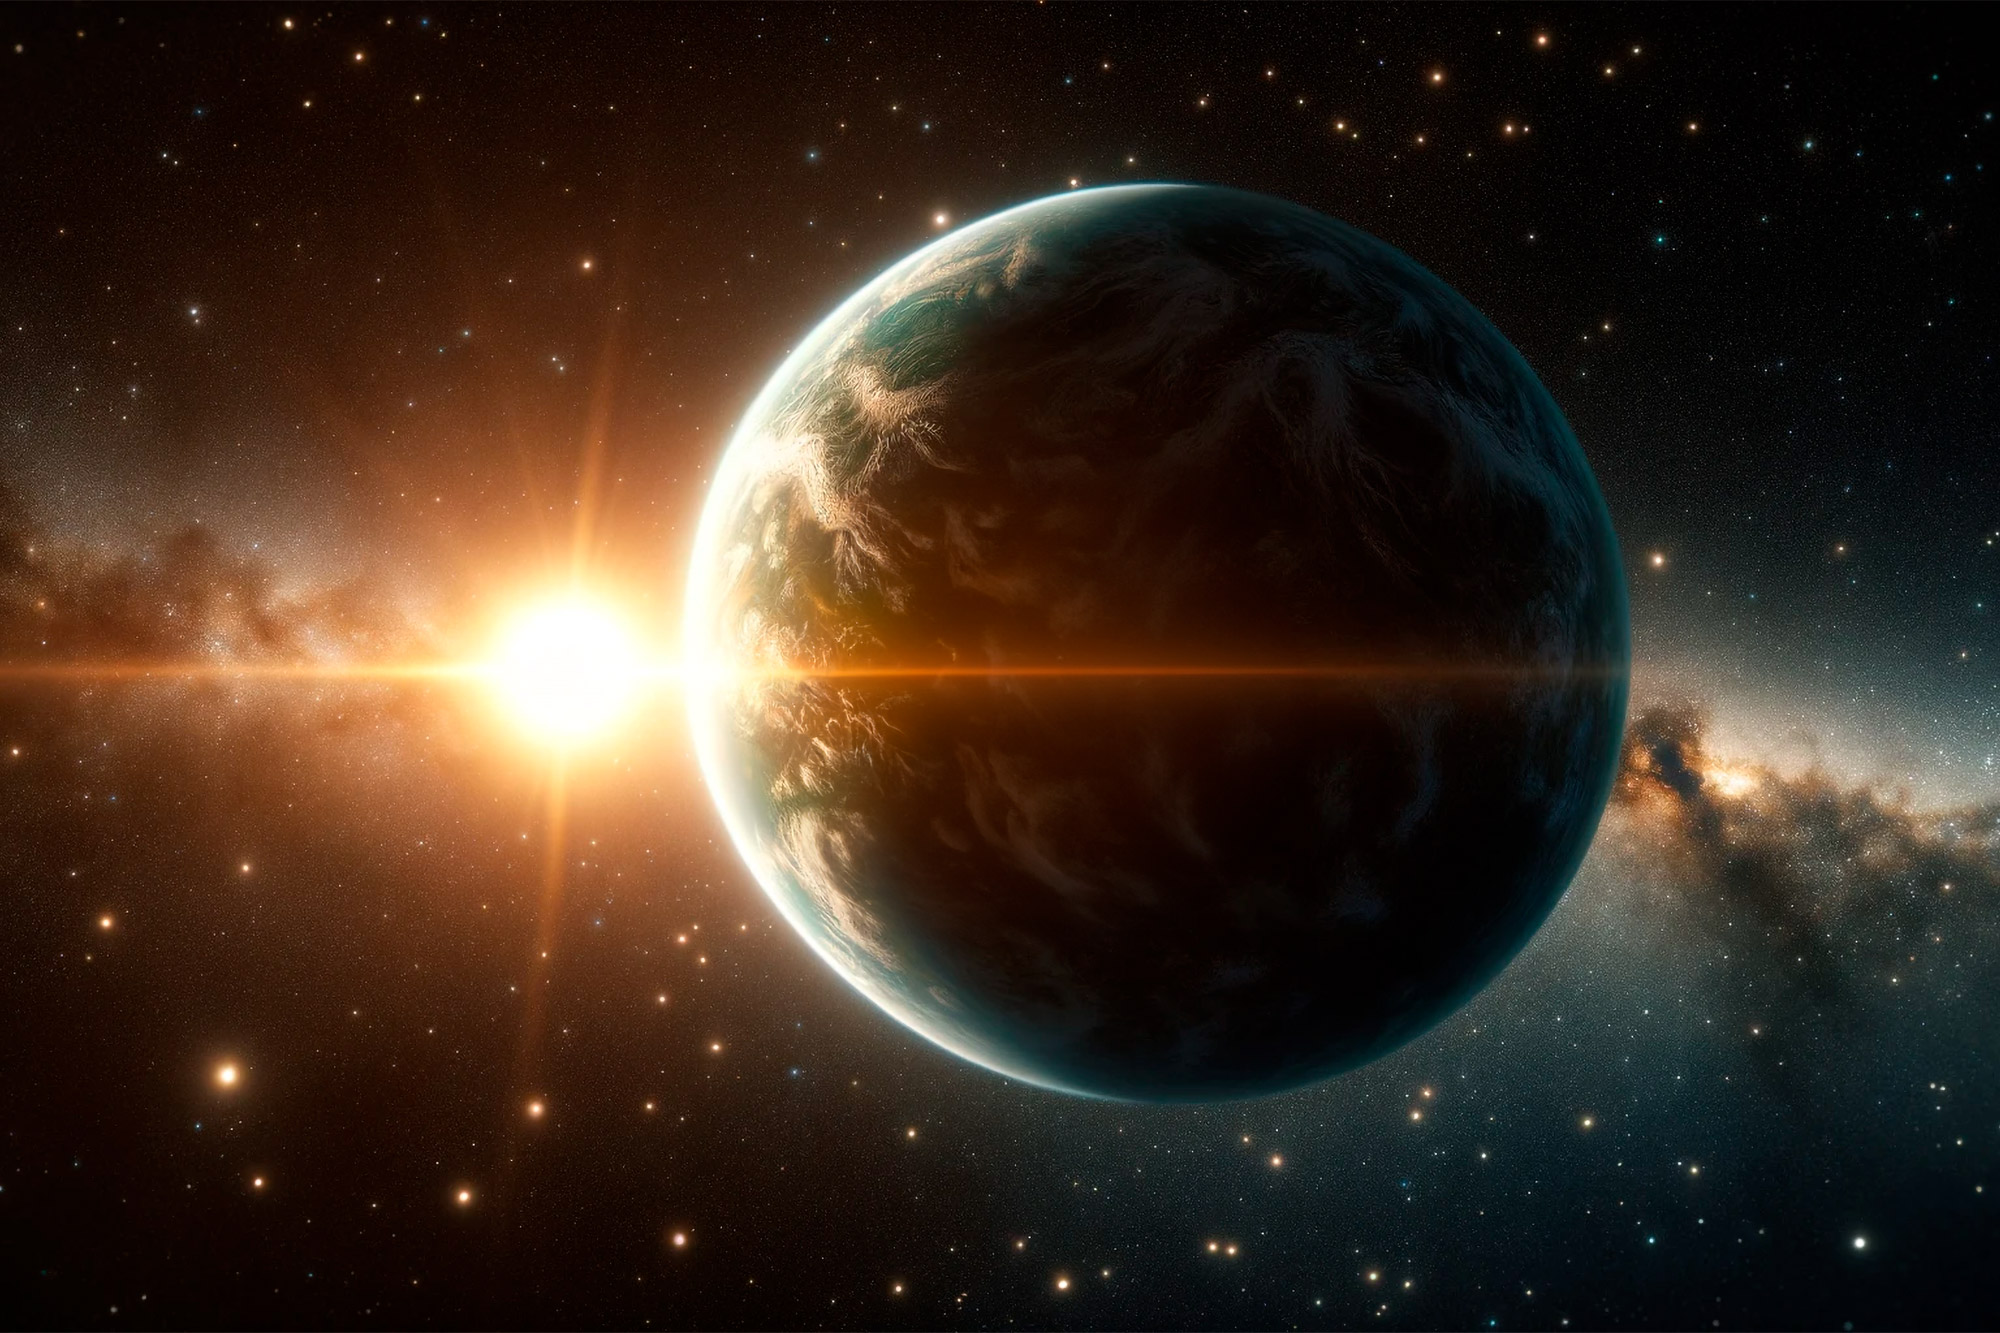 “ضخم بشكل استثنائي” – اكتشف علماء الفلك كوكبًا لا ينبغي أن يكون موجودًا